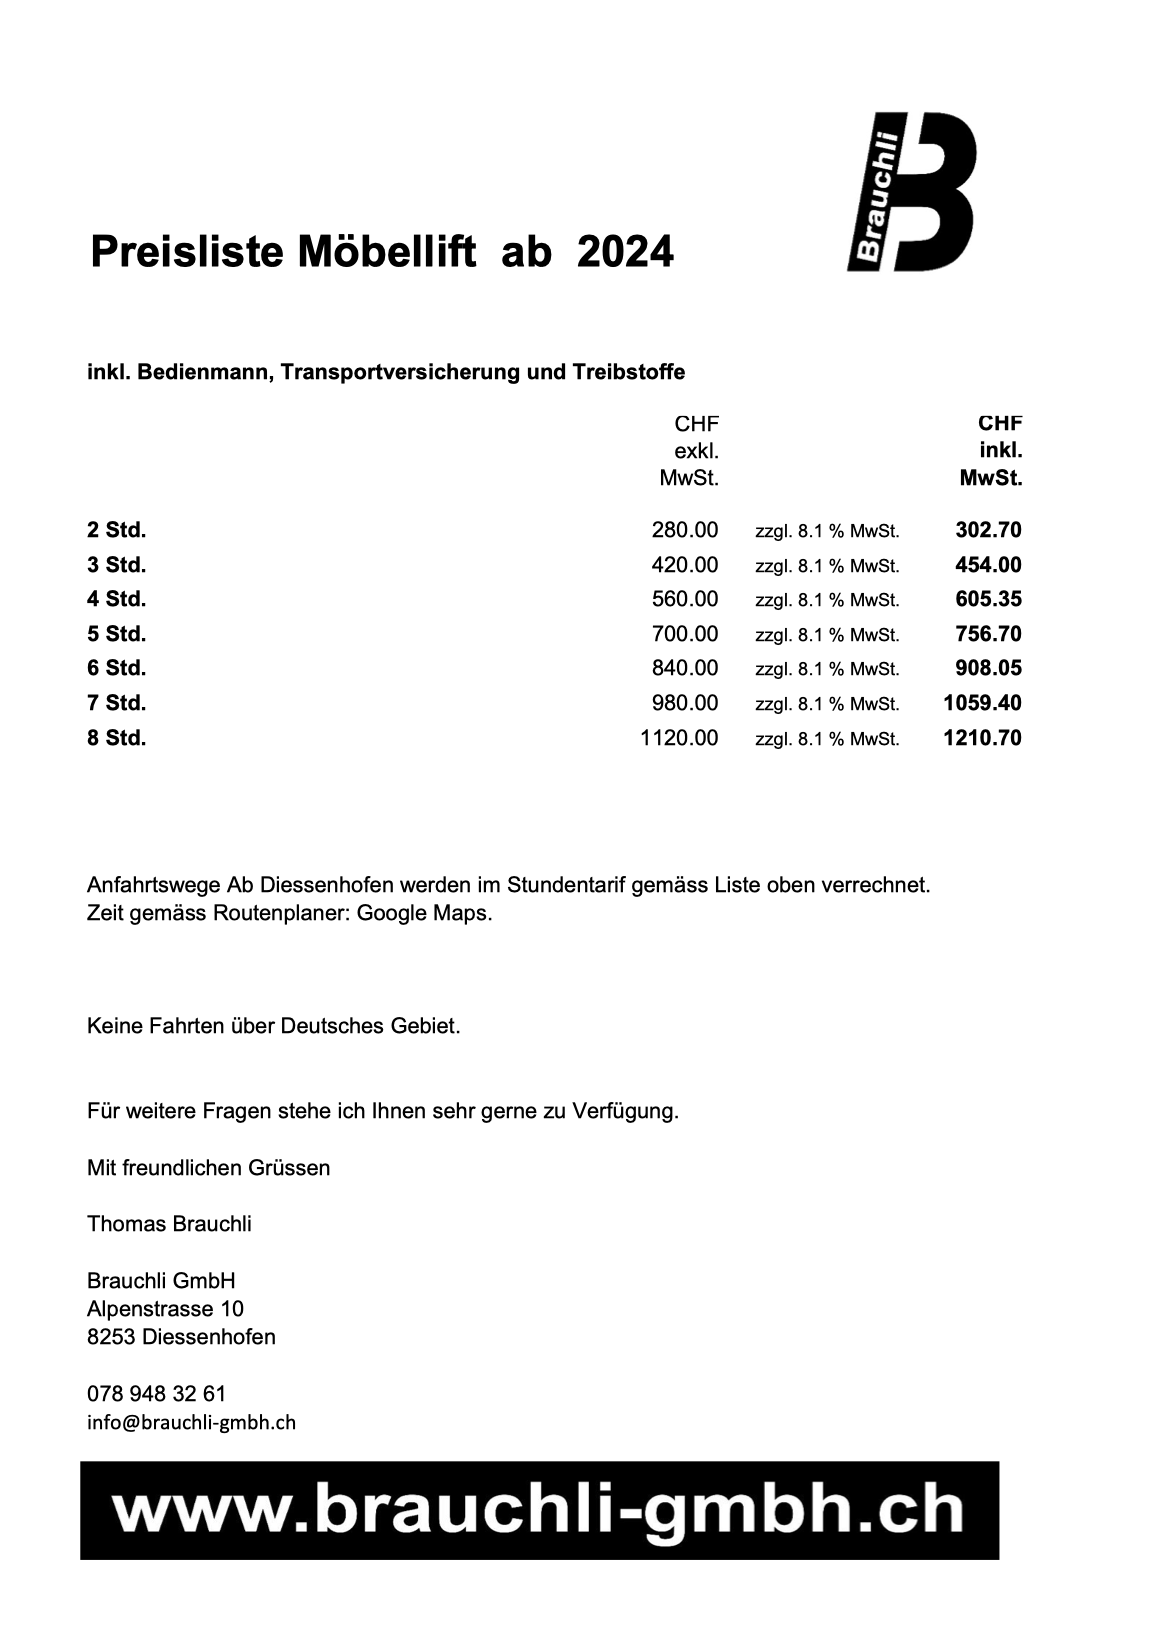 Preisliste_Moebellift_2024